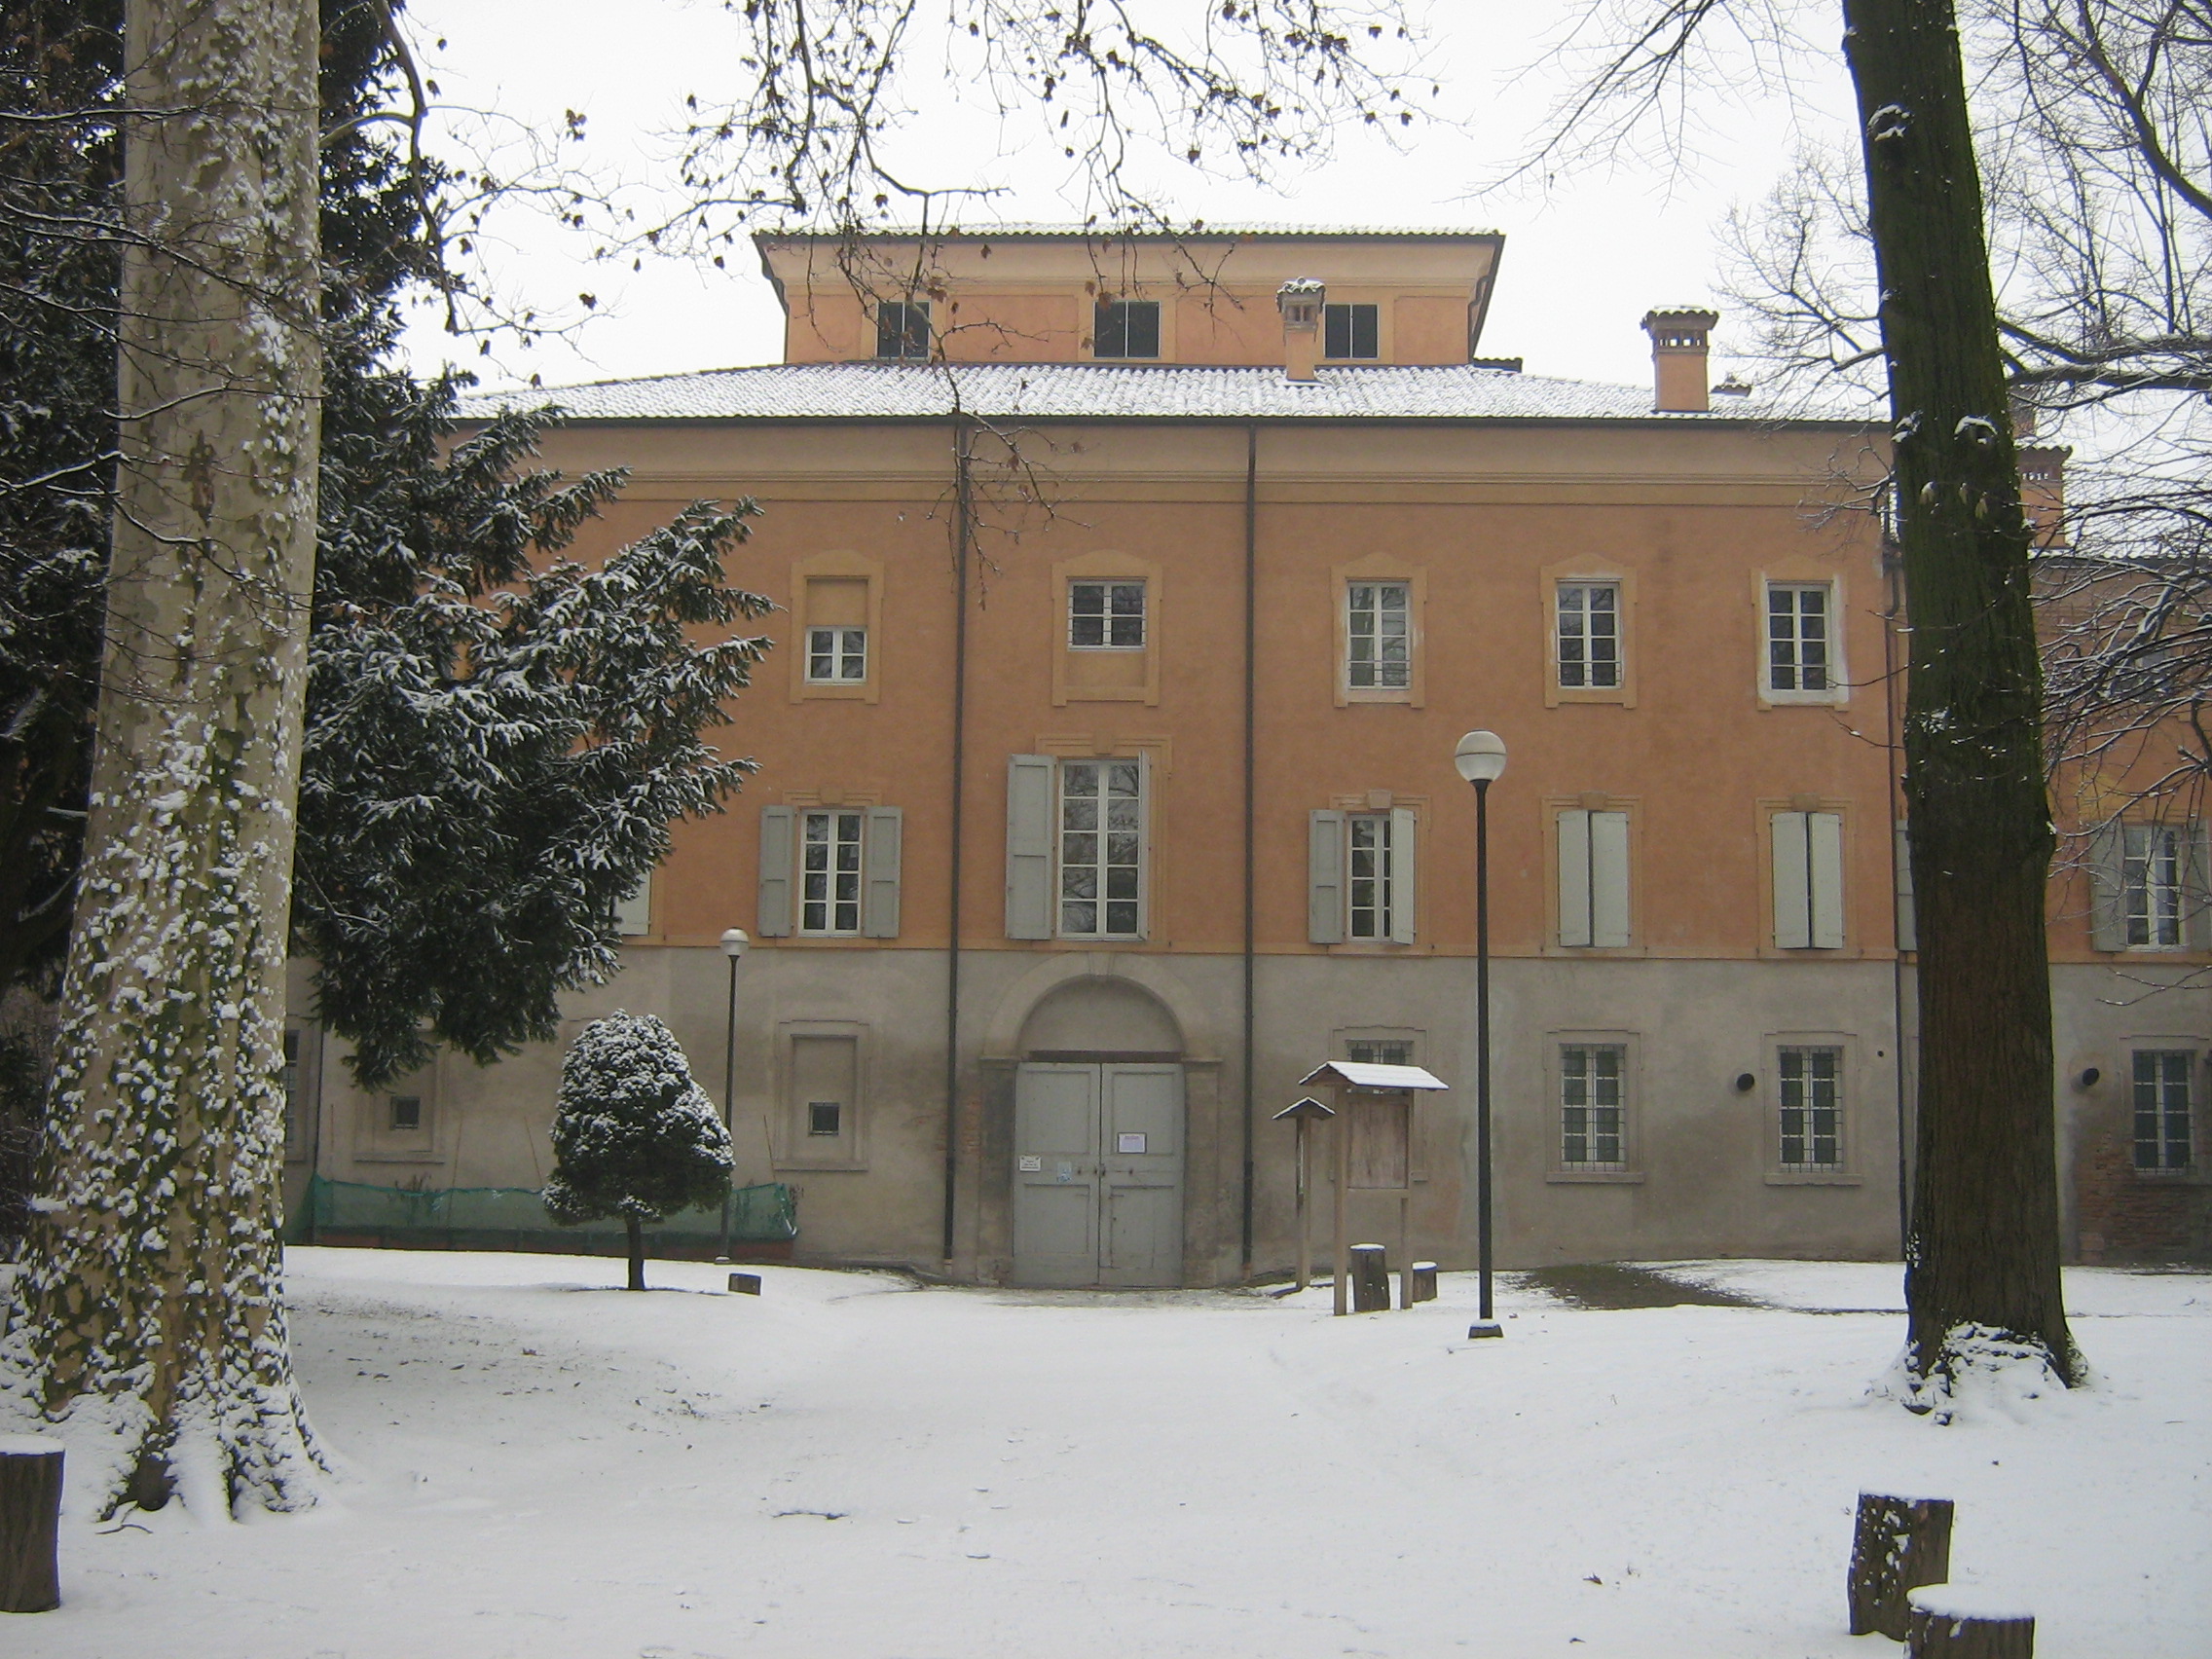 foto: https://upload.wikimedia.org/wikipedia/commons/0/0c/Palazzo_Sartoretti_e_parco_in_inverno.jpg